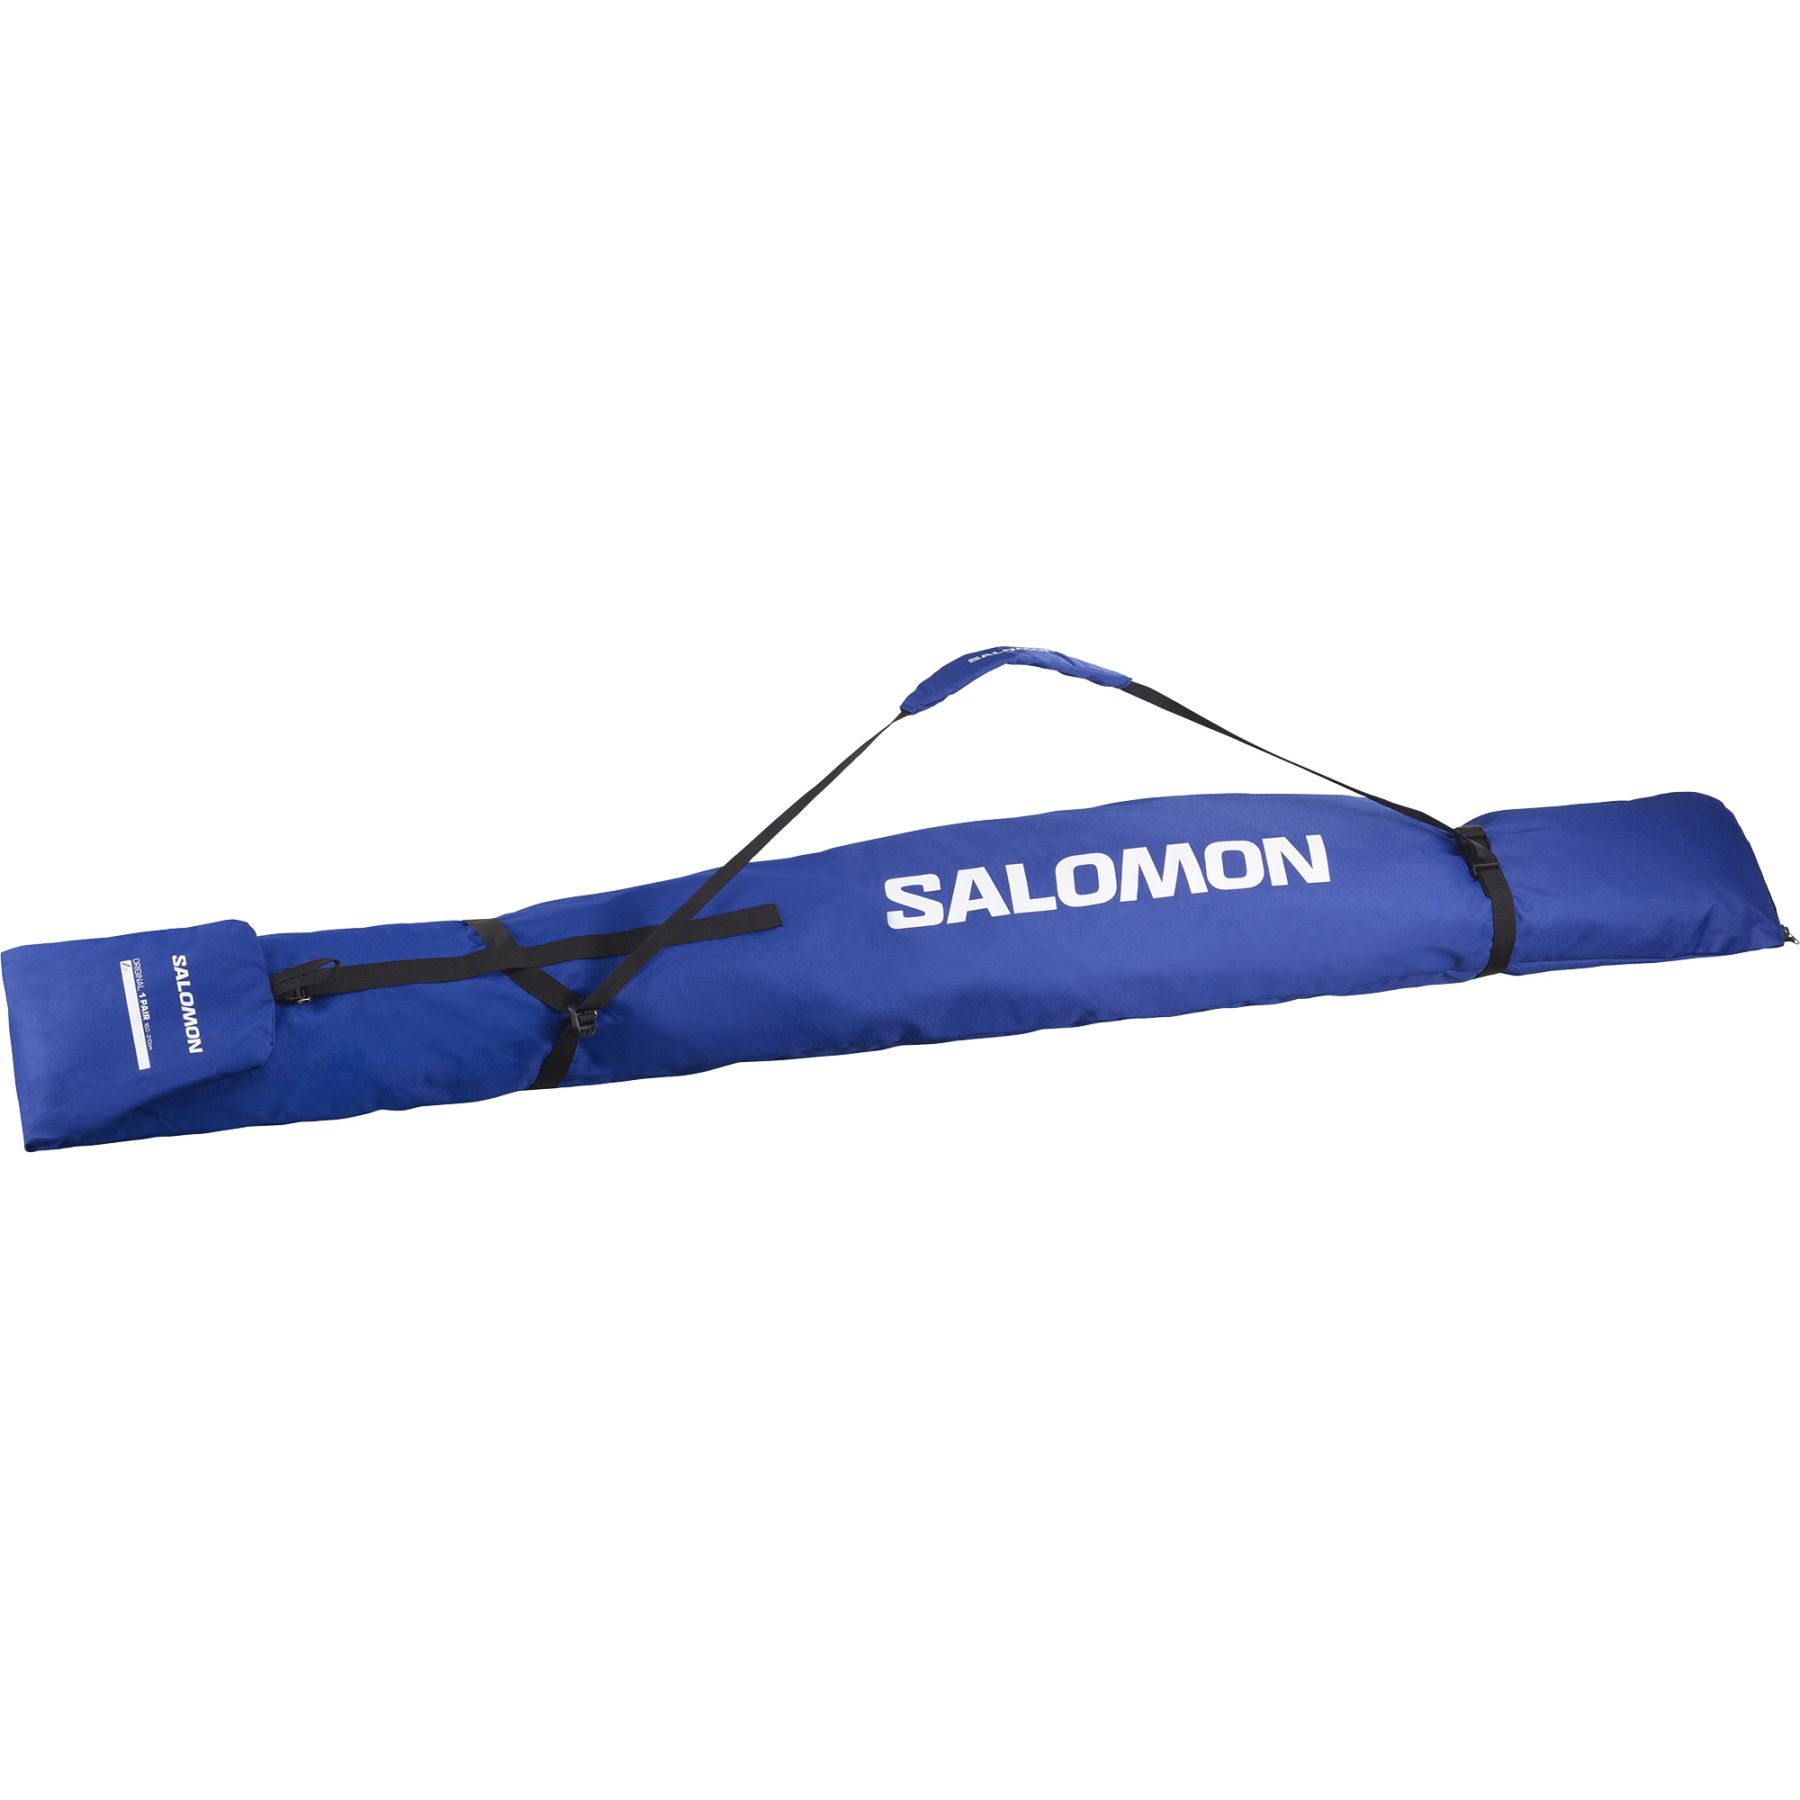 Salomon Original 1P 160-210 suksilaukku sininen